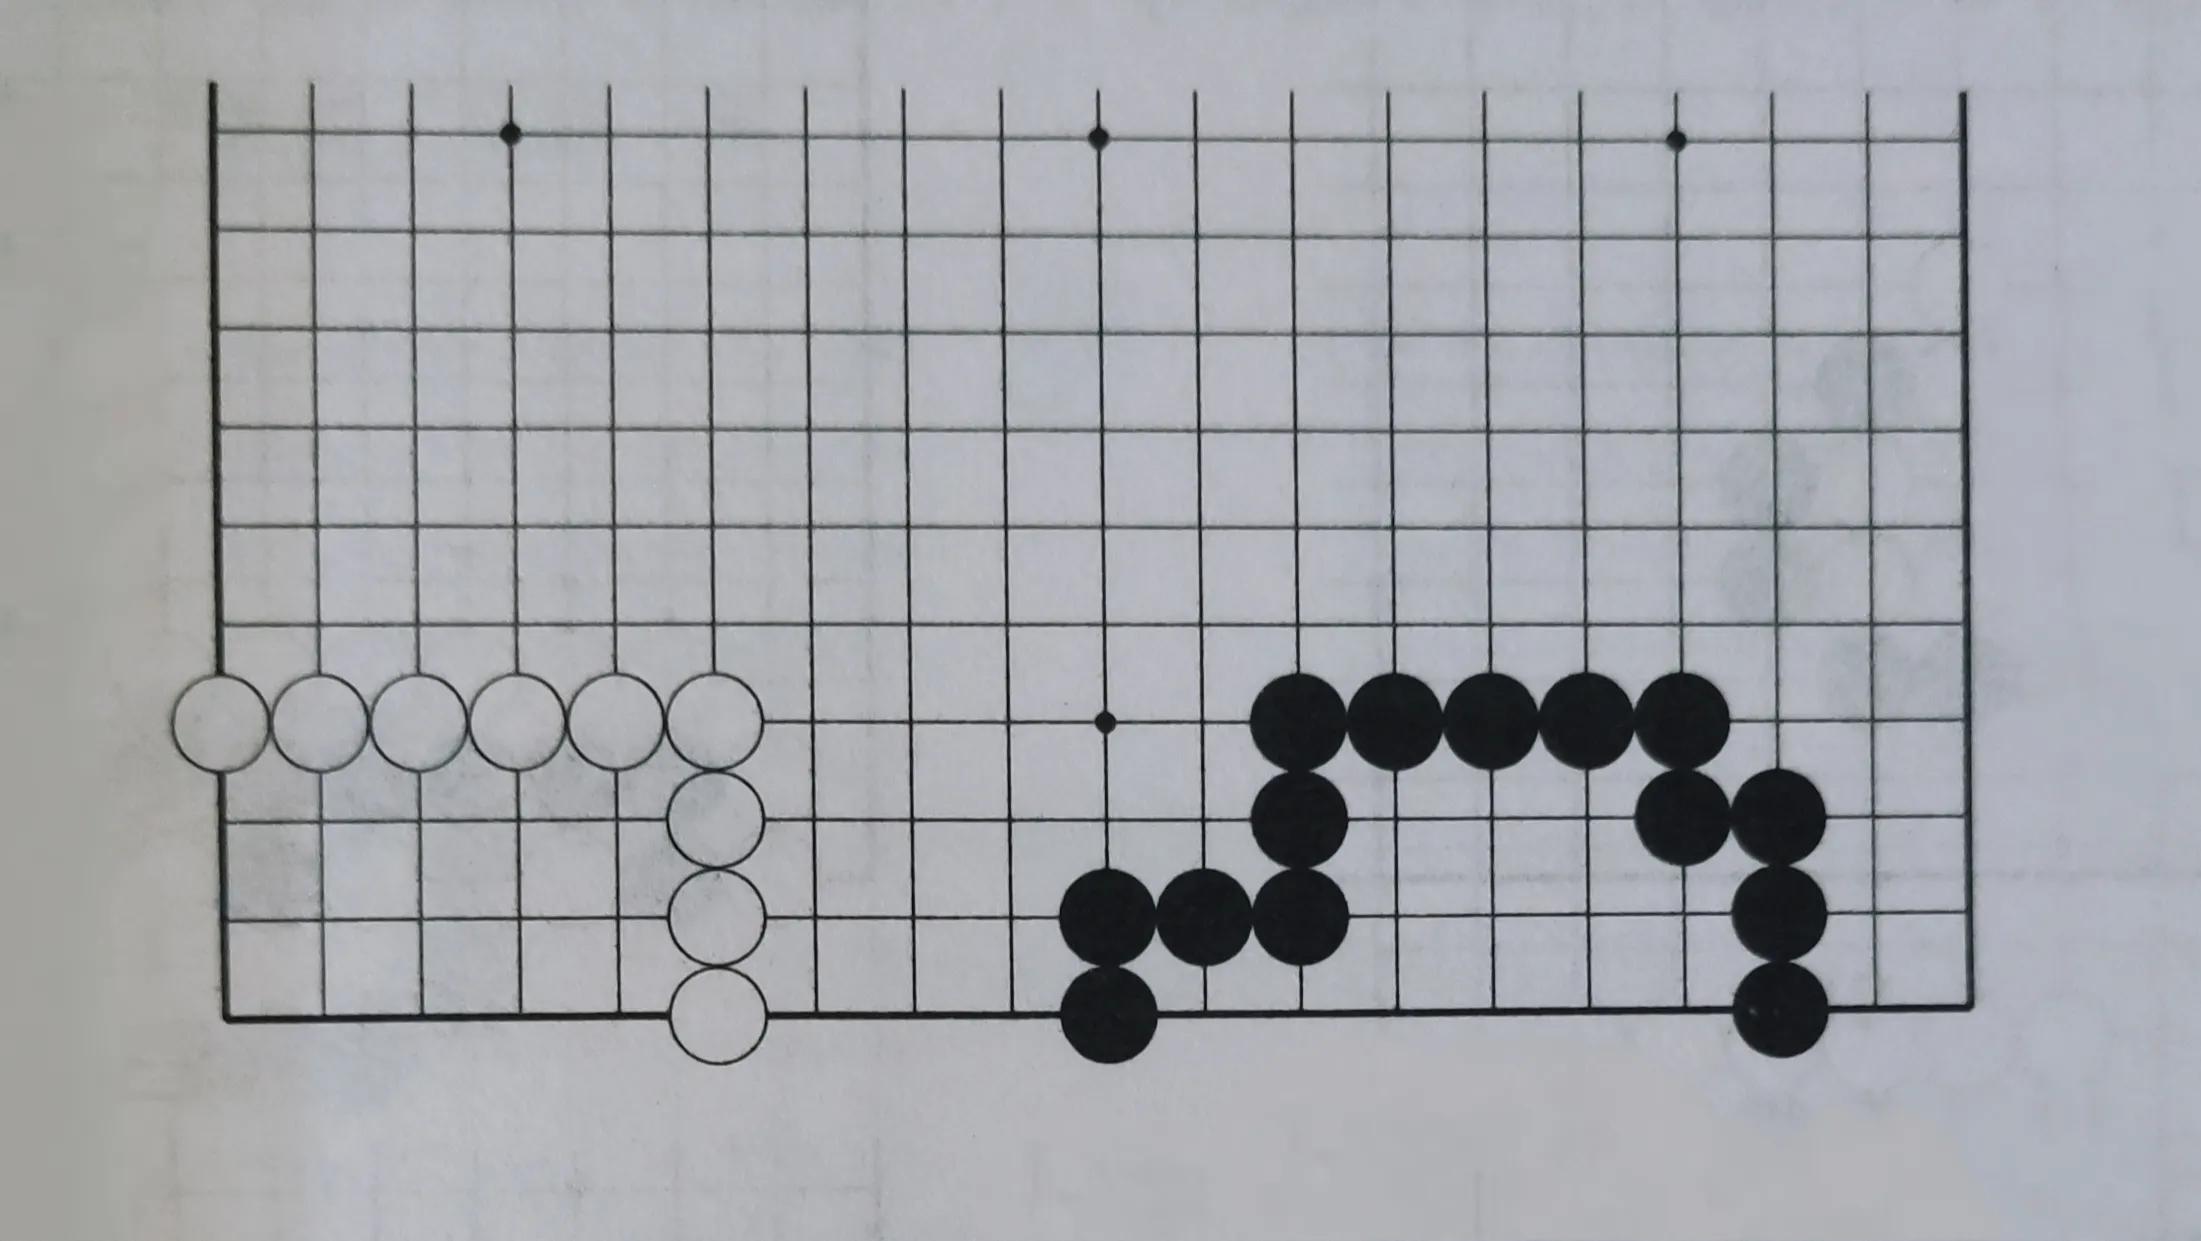 围棋盘有几个交叉点(19*19的围棋盘有几个交叉点)